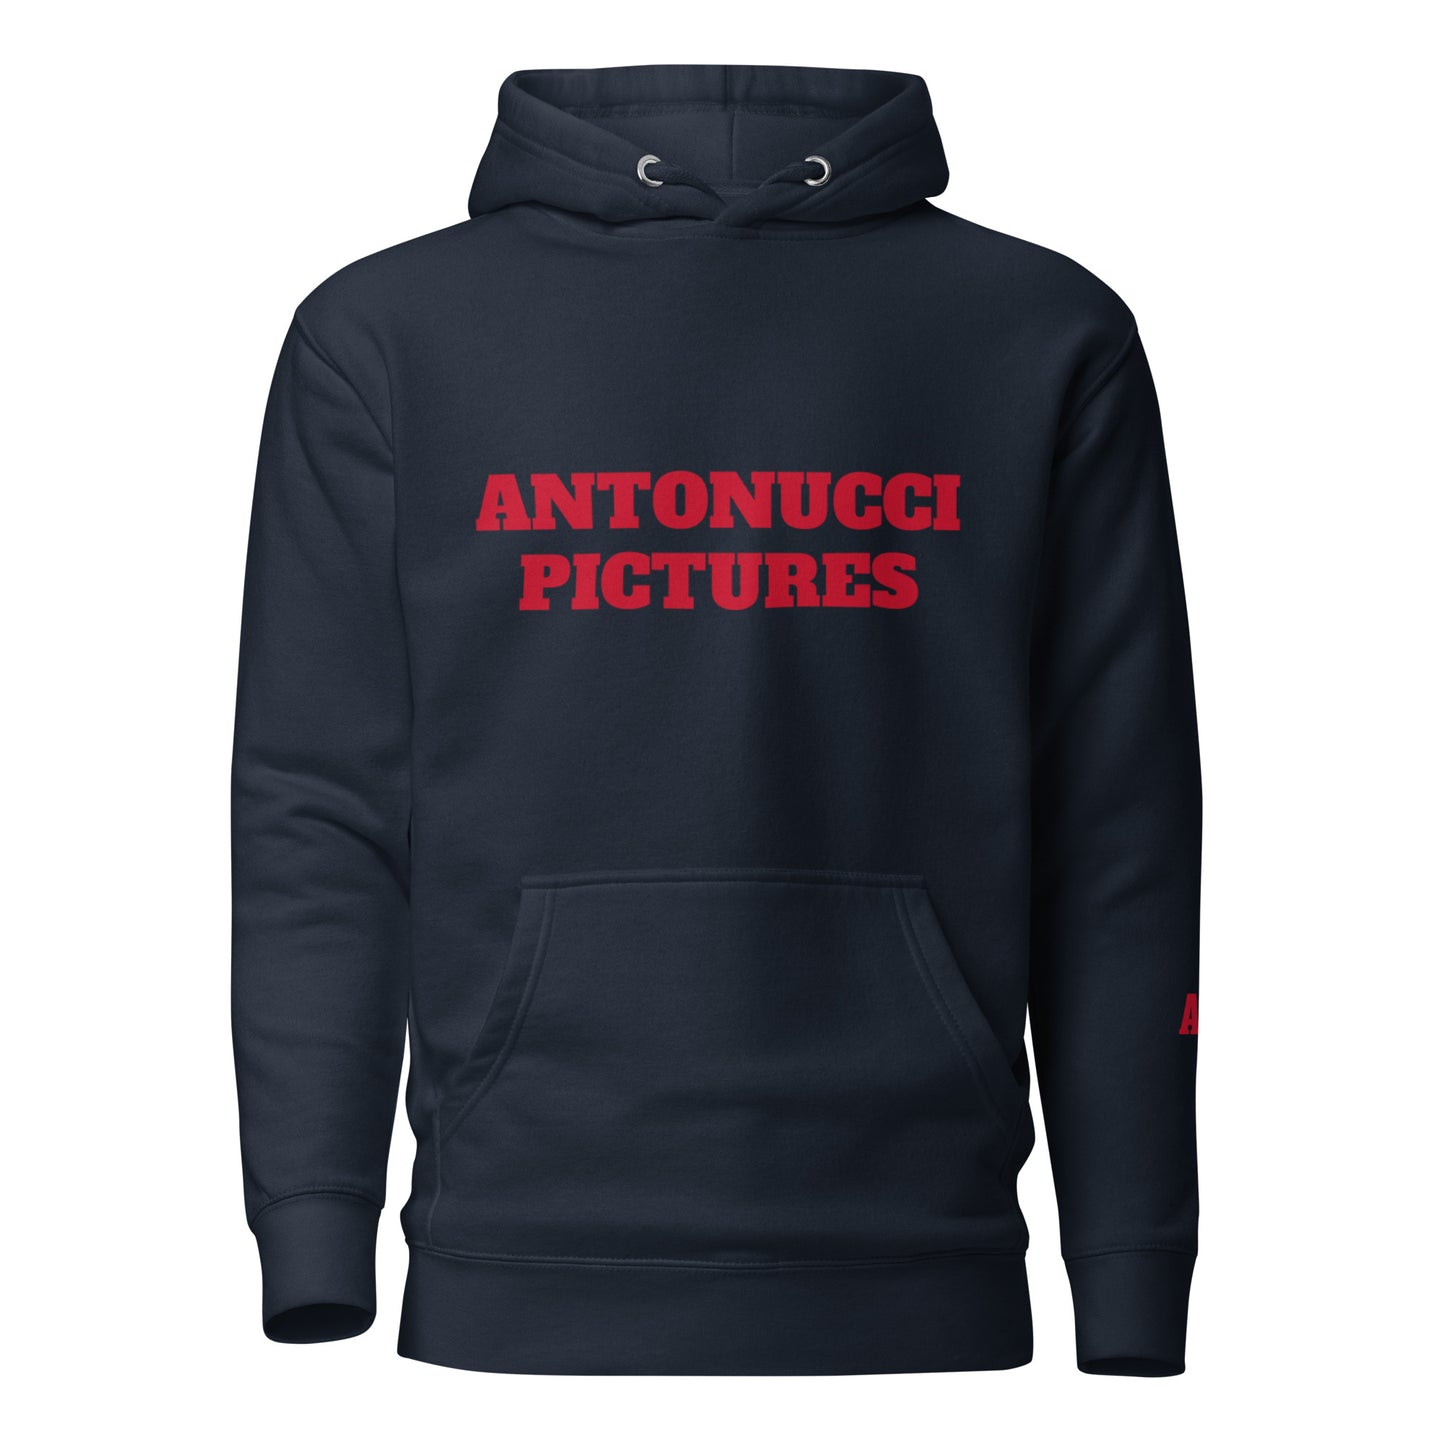 Antonucci Pictures Unisex Hoodie